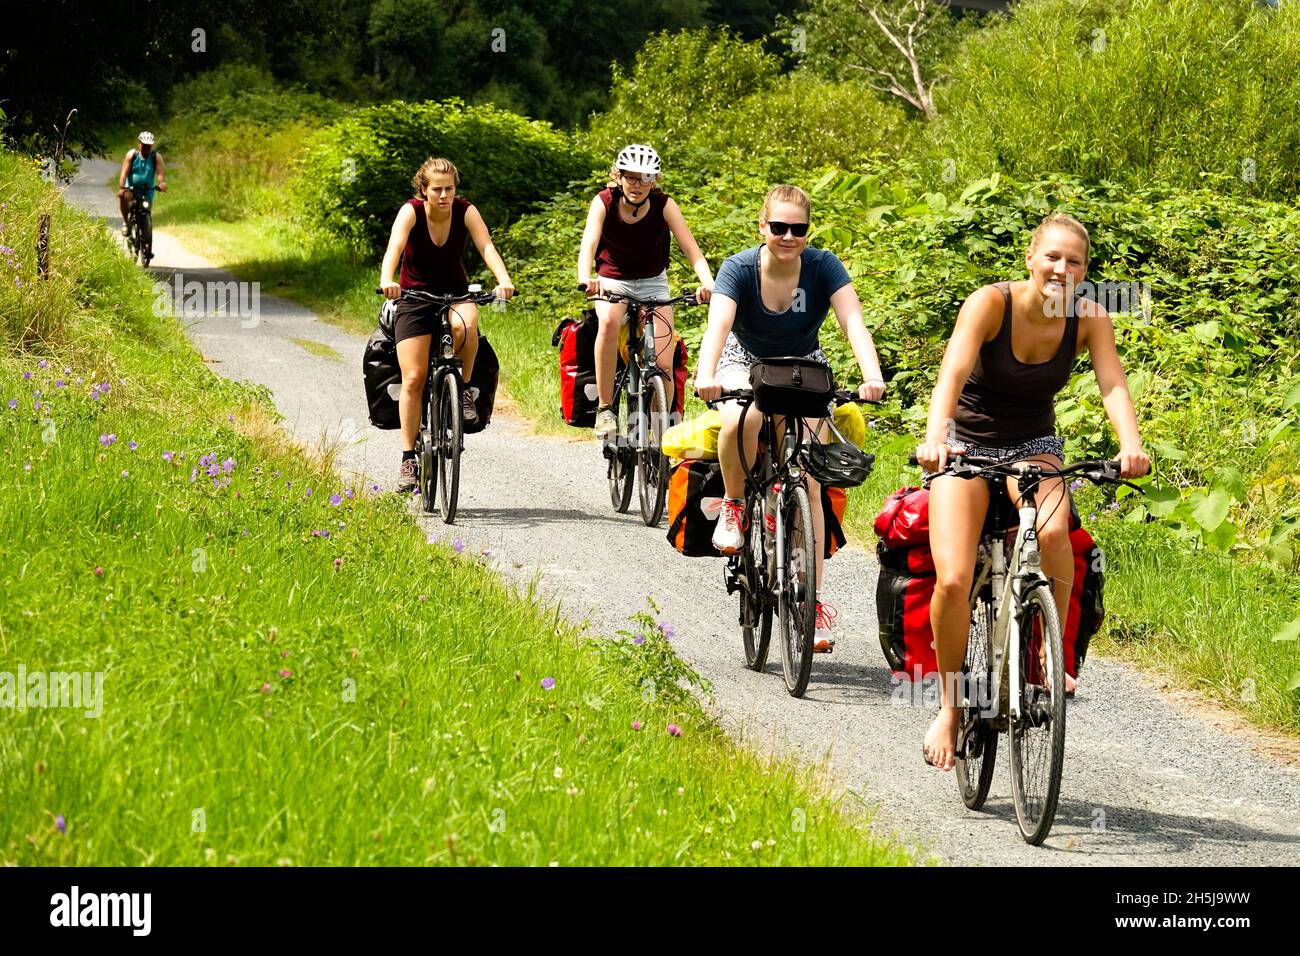 Mujeres en bicicleta montando juntos a través del valle del Elba ciclo ruta Sajonia Alemania naturaleza verano pista mujeres en bicicletas día de verano Foto de stock